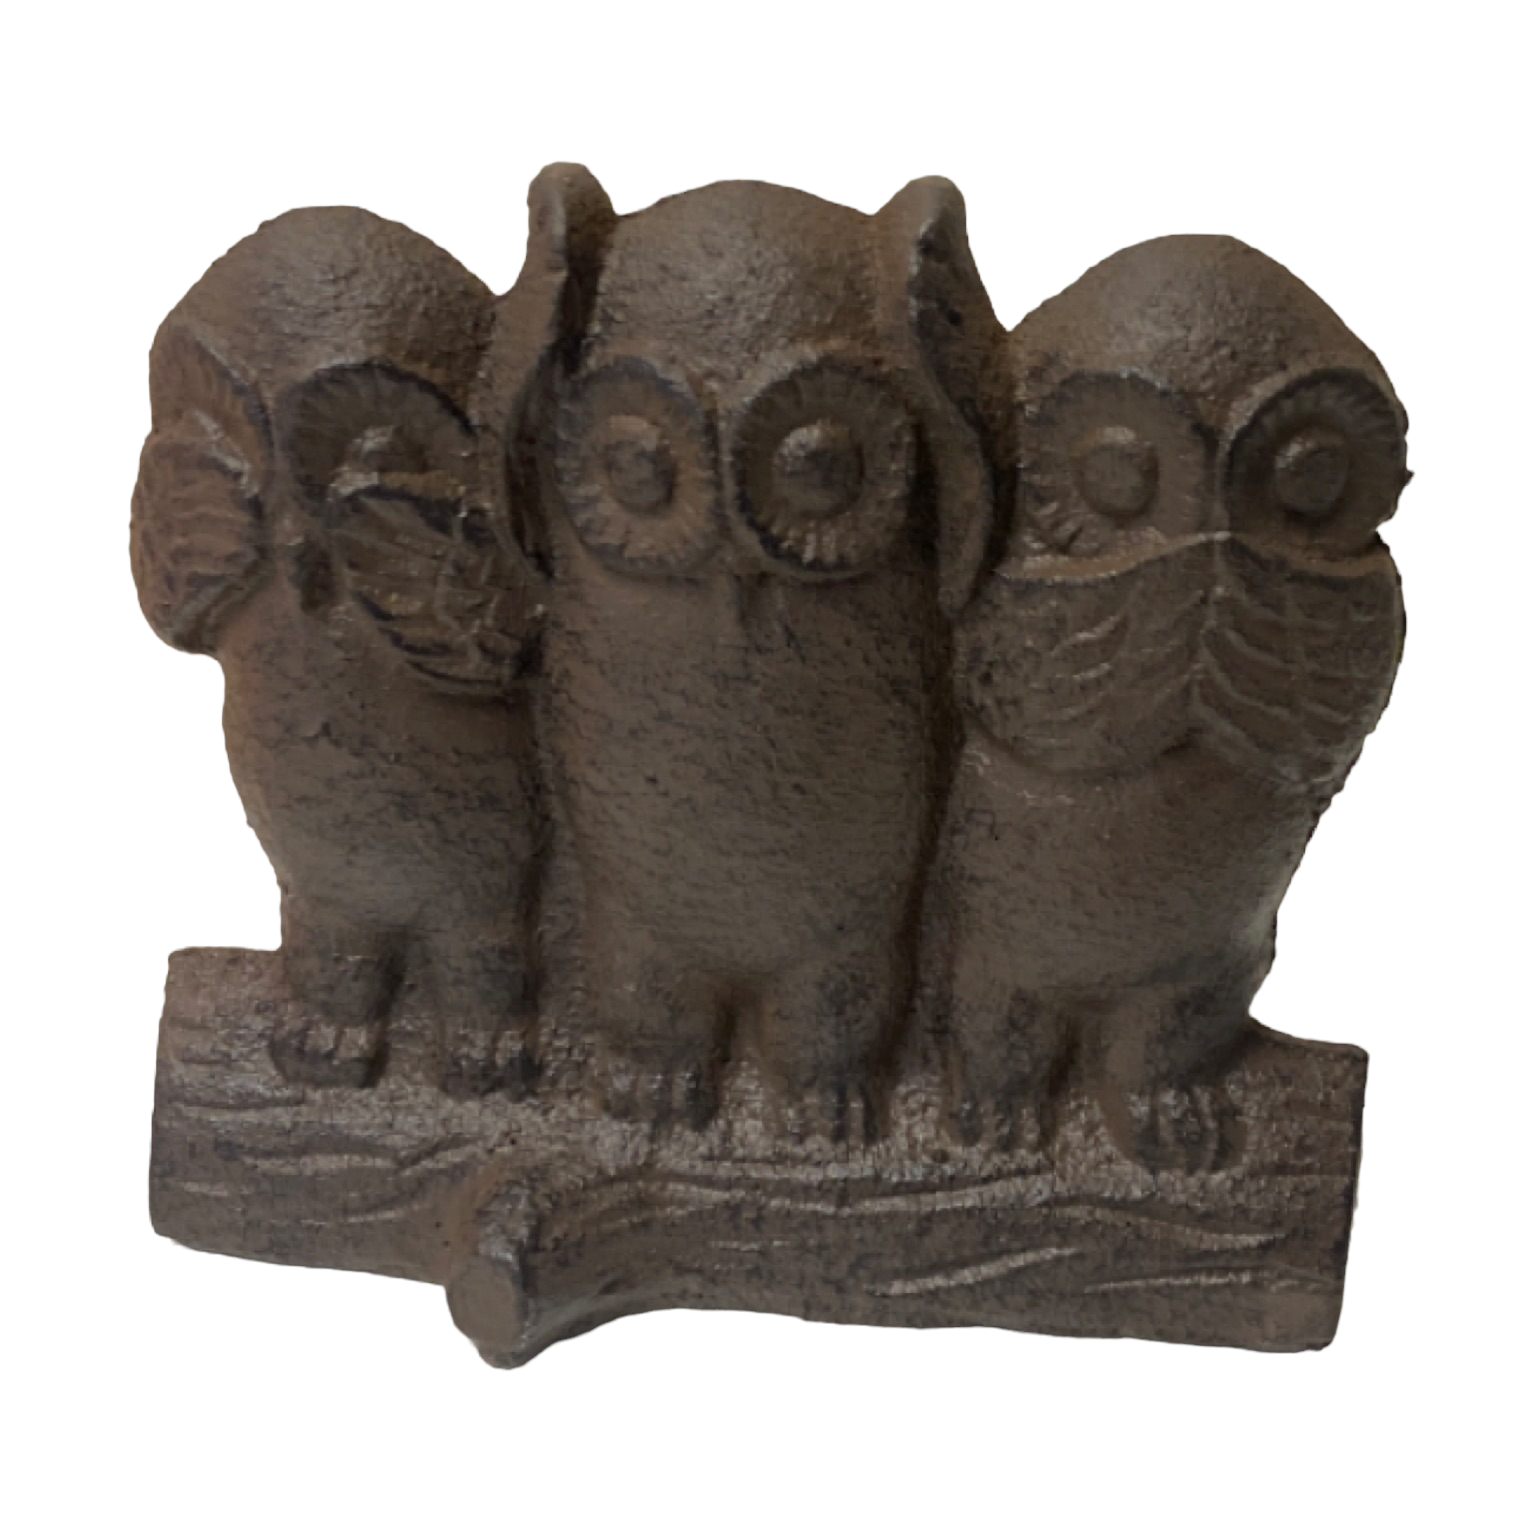 Owl Cast Iron Metal Door Stop Stopper Wedge - The Renmy Store Homewares & Gifts 